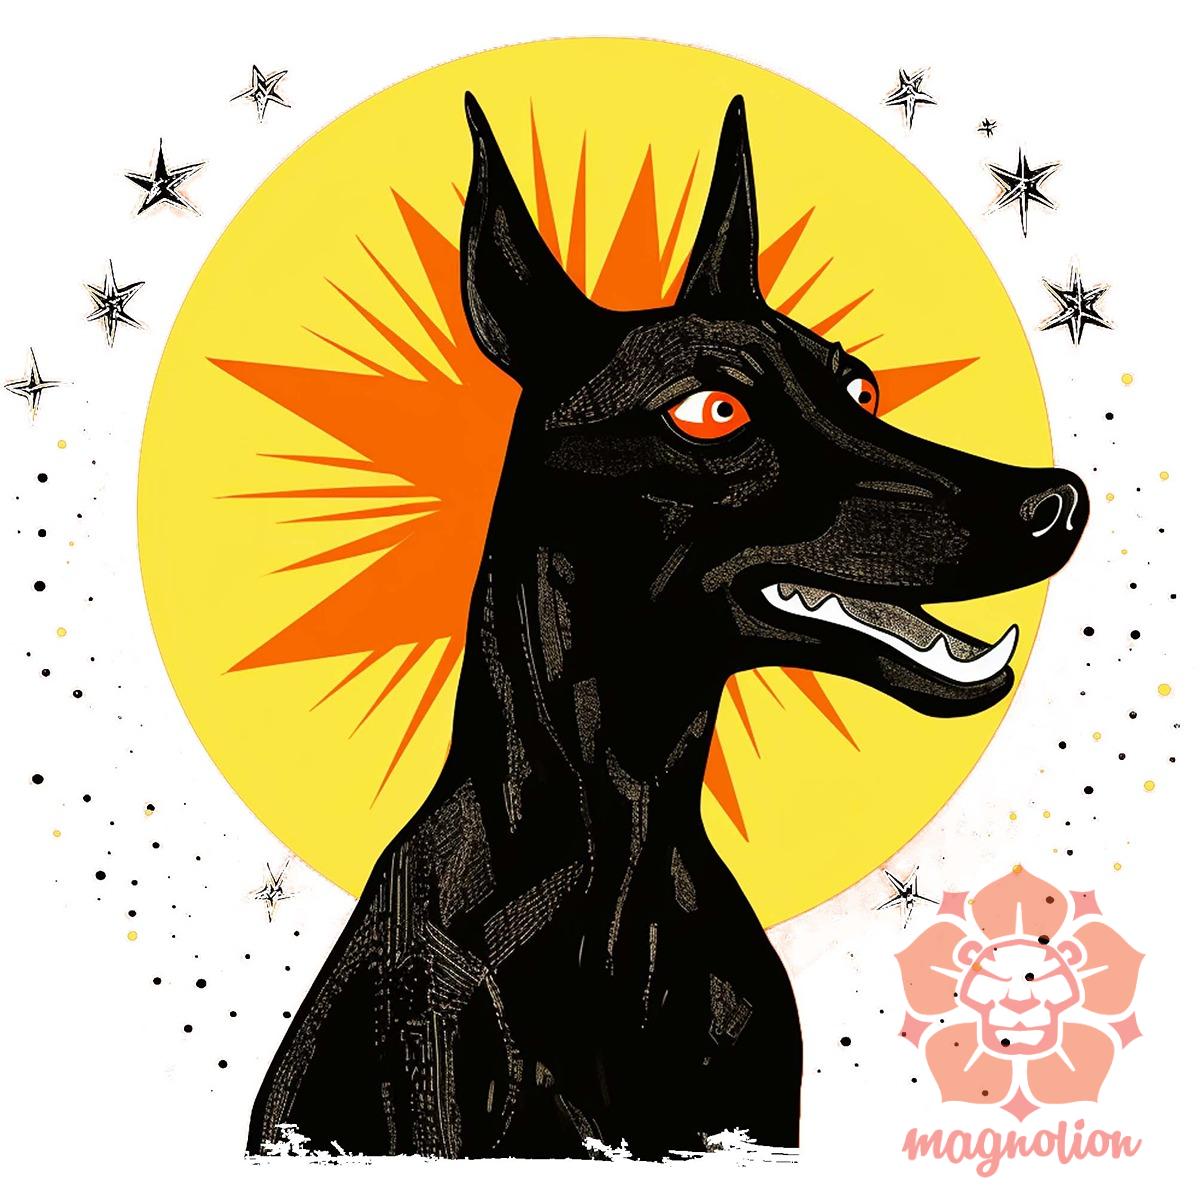 Fekete kutya csillagok között v6